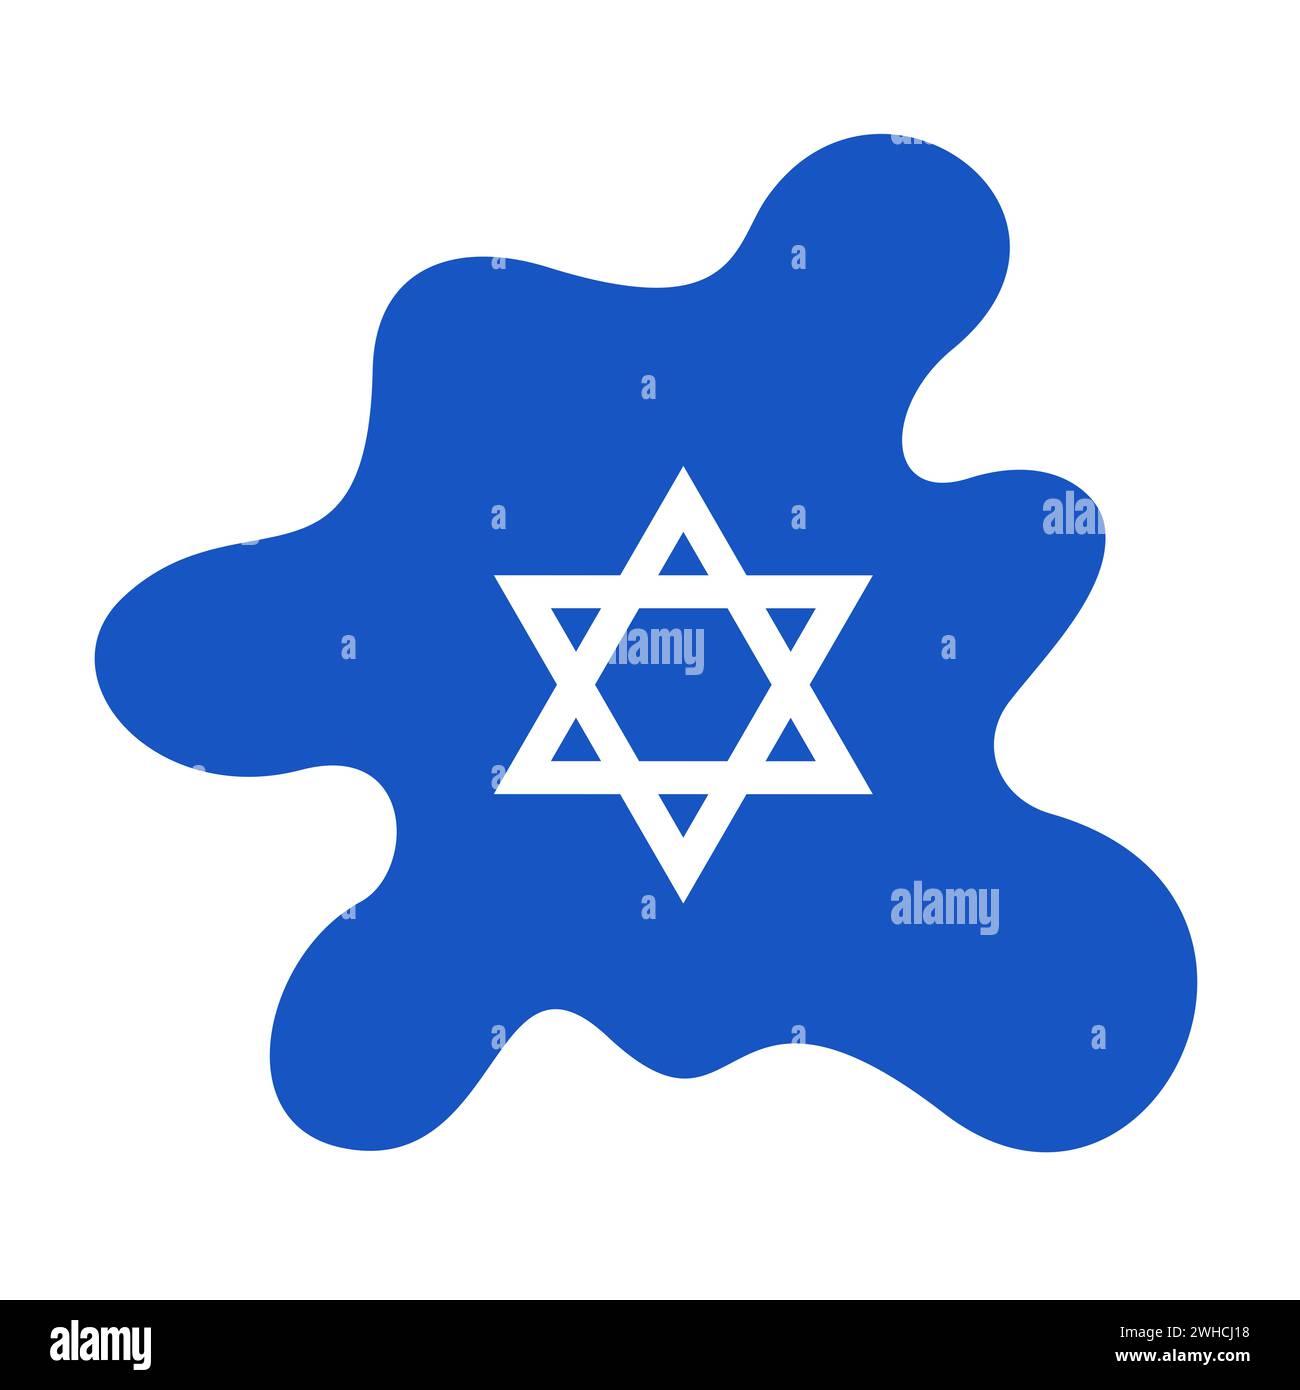 Puddle and Spill con il simbolo nazionale di Israele. Metafora dell'espansione israeliana, dell'insediamento espansivo, dell'occupazione, dell'annessione e della colonizzazione. Sionismo Foto Stock